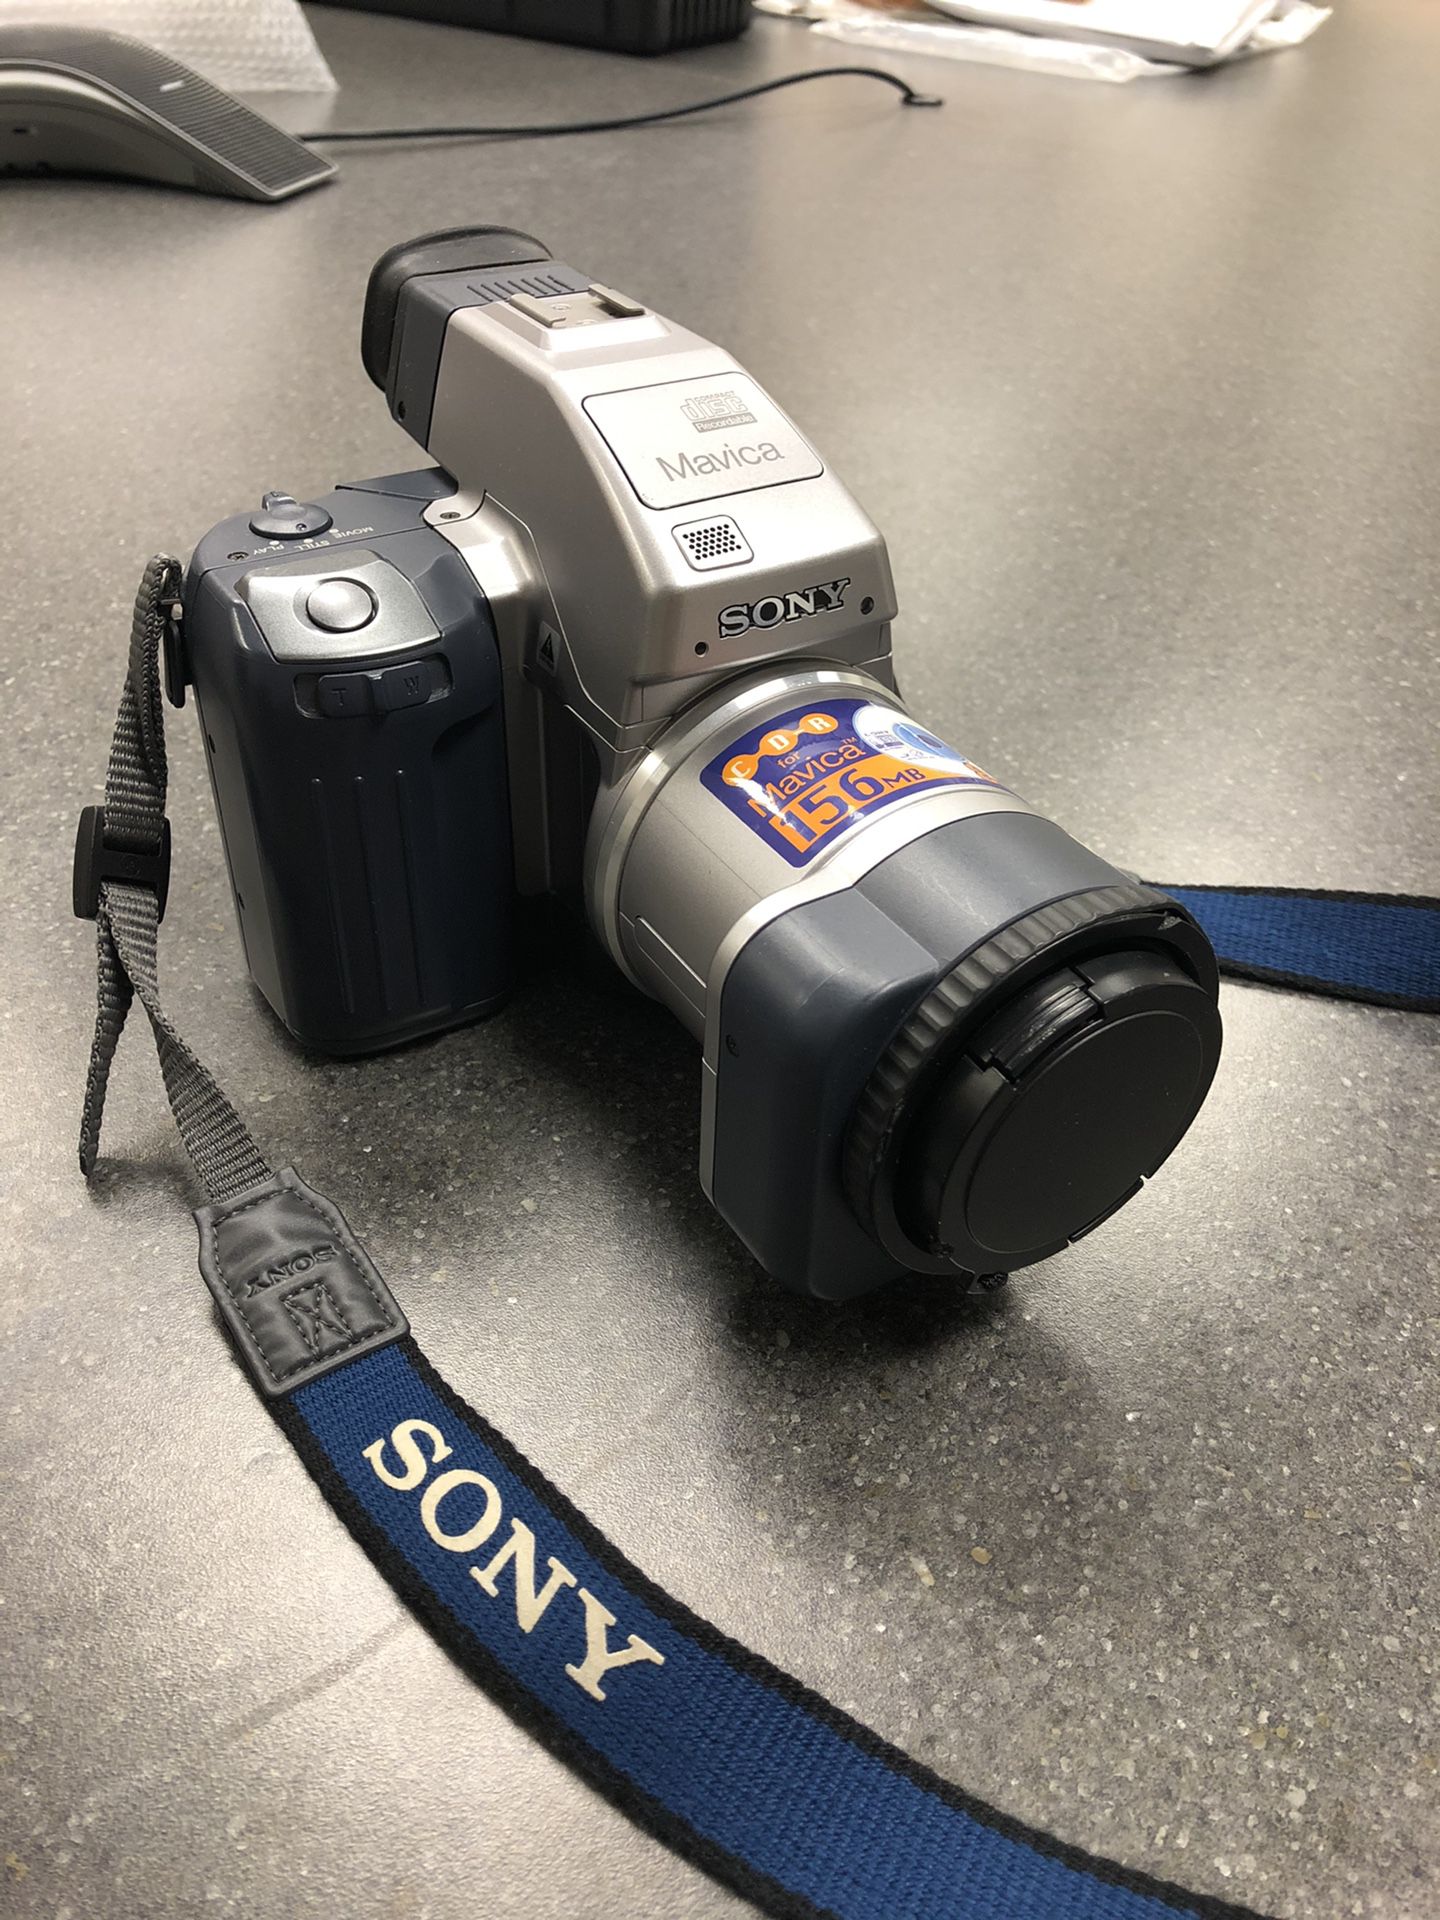 Sony Mavica Digital Camera